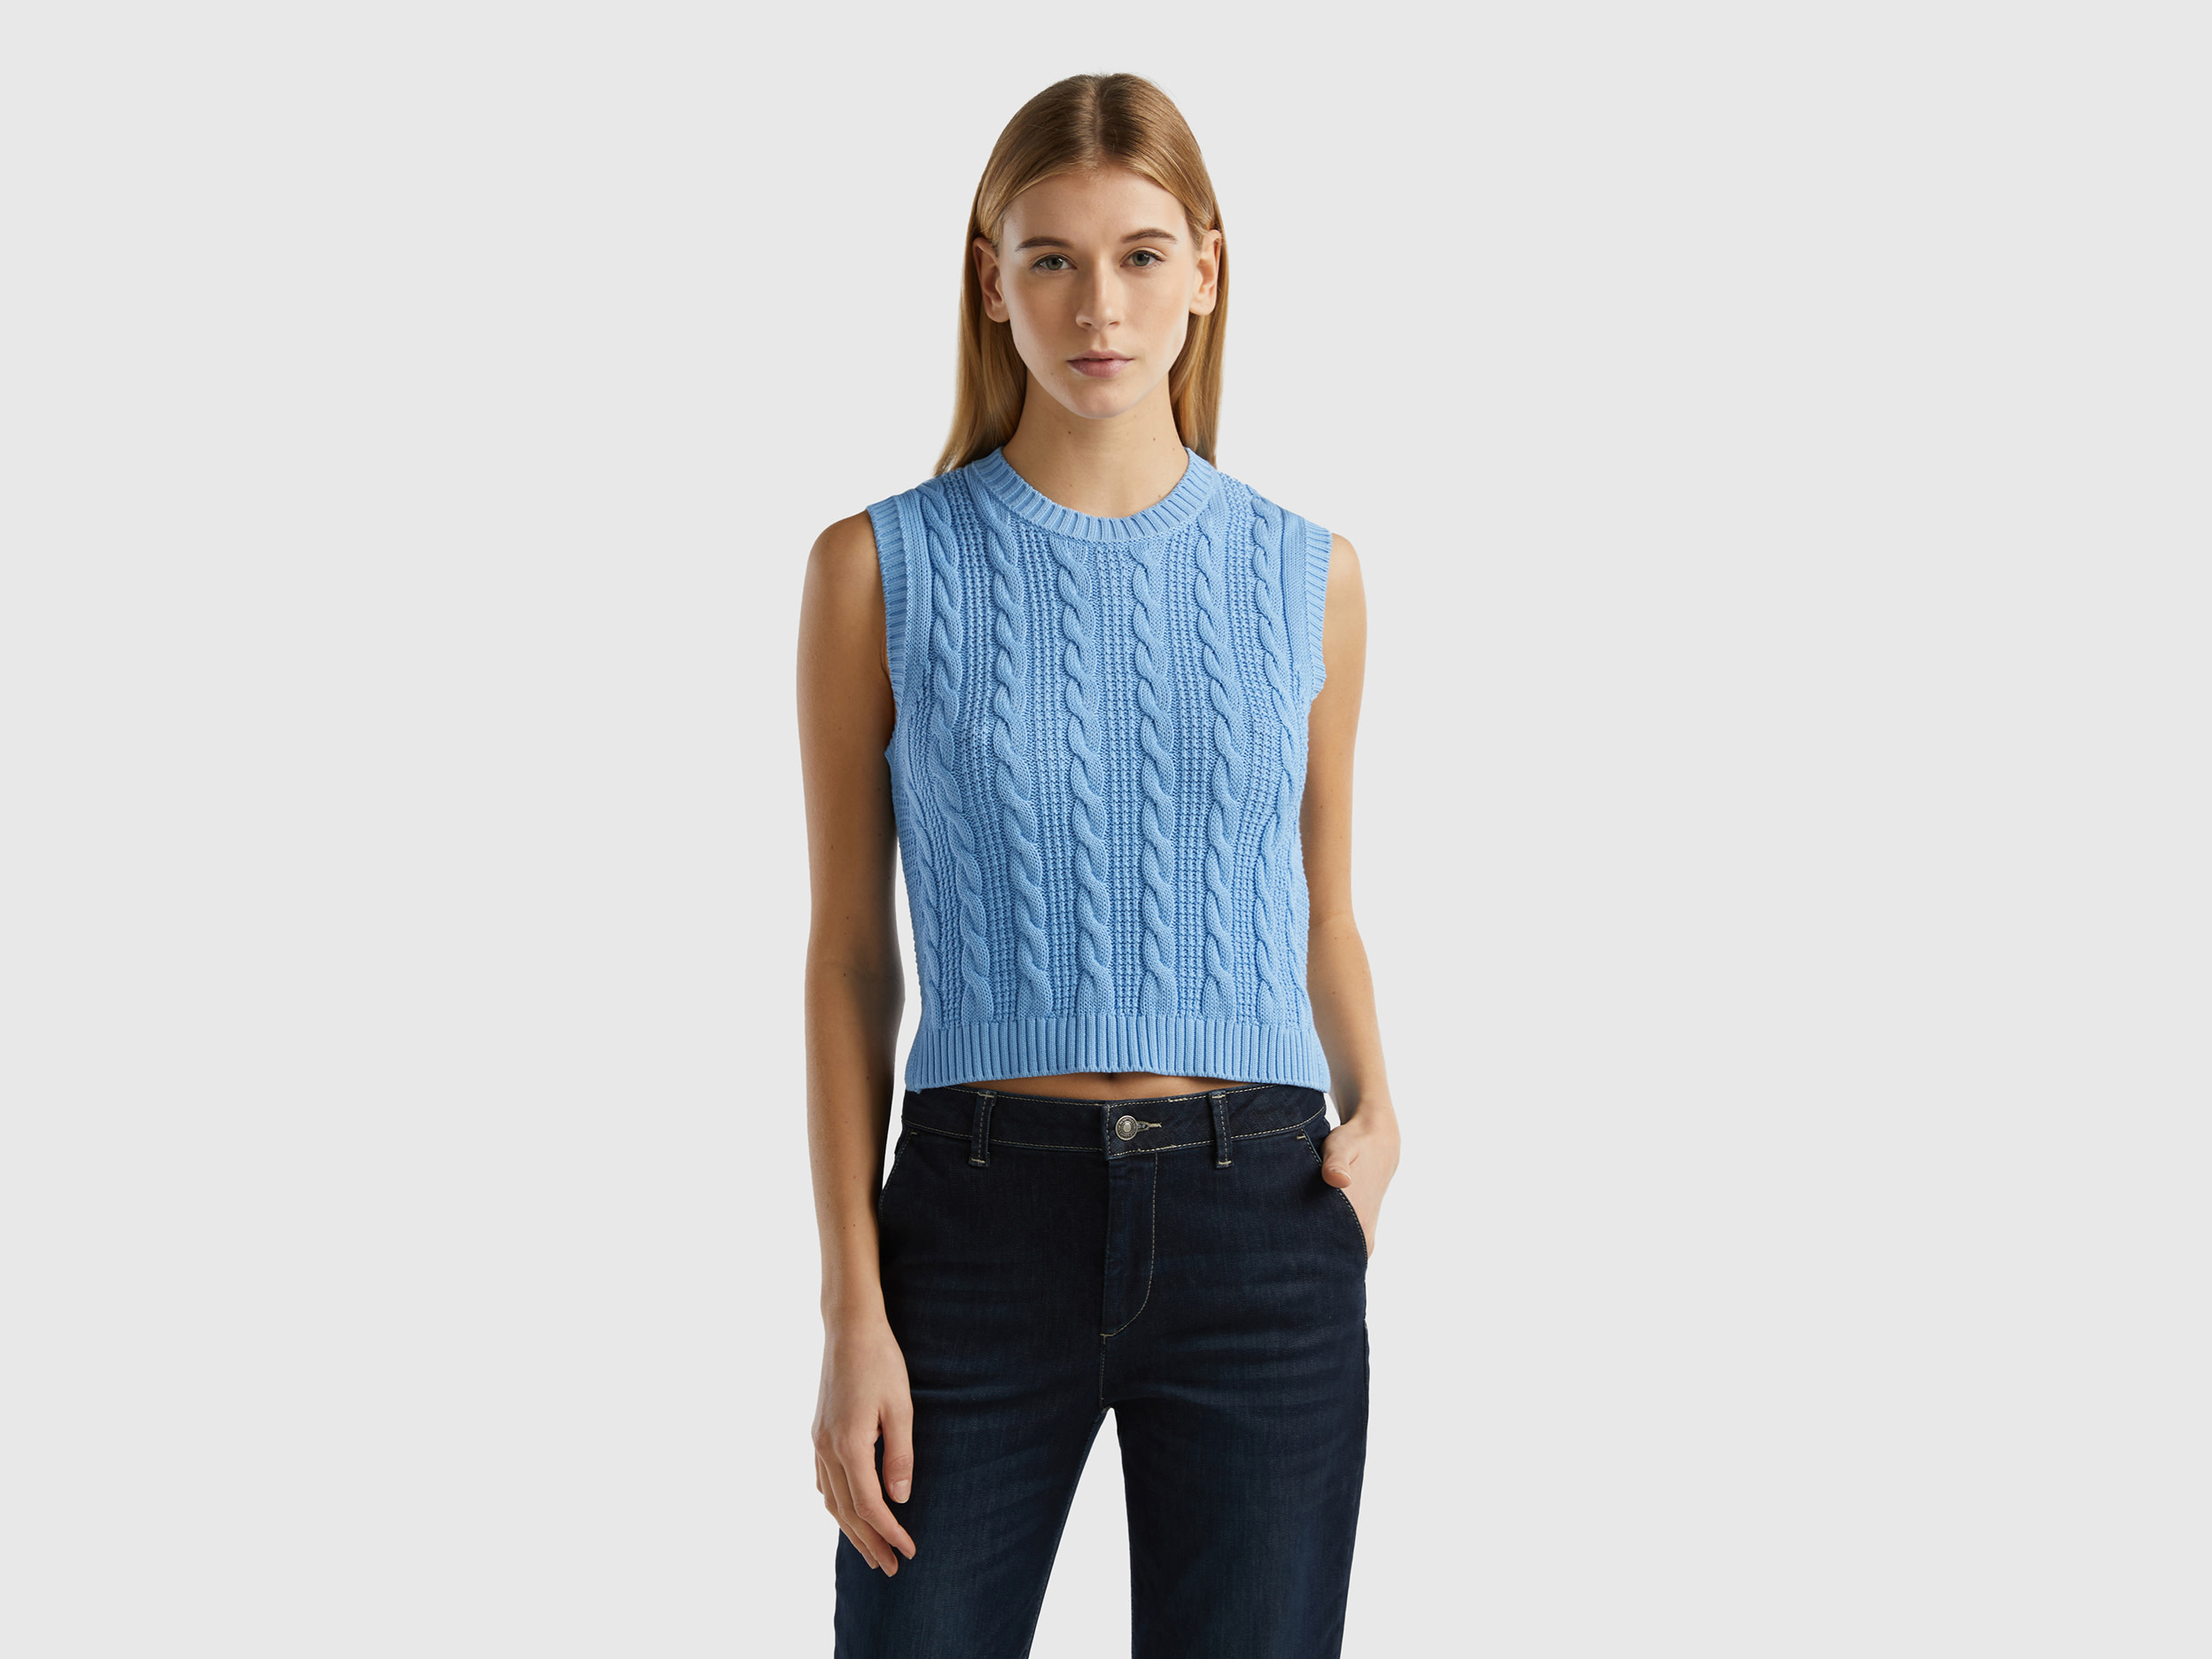 Benetton, Cropped Cable Knit Vest, size L, Light Blue, Women